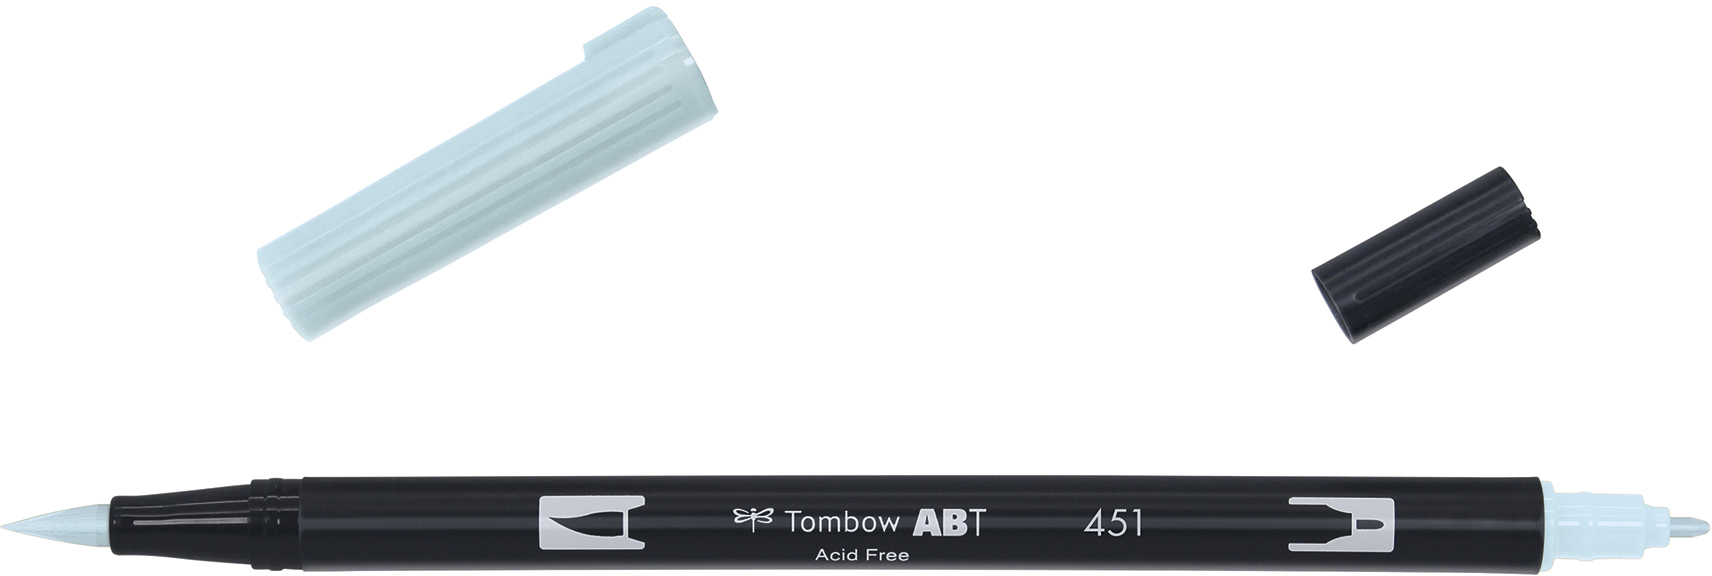 TOMBOW Dual Brush Pen ABT 451 cleu ciel